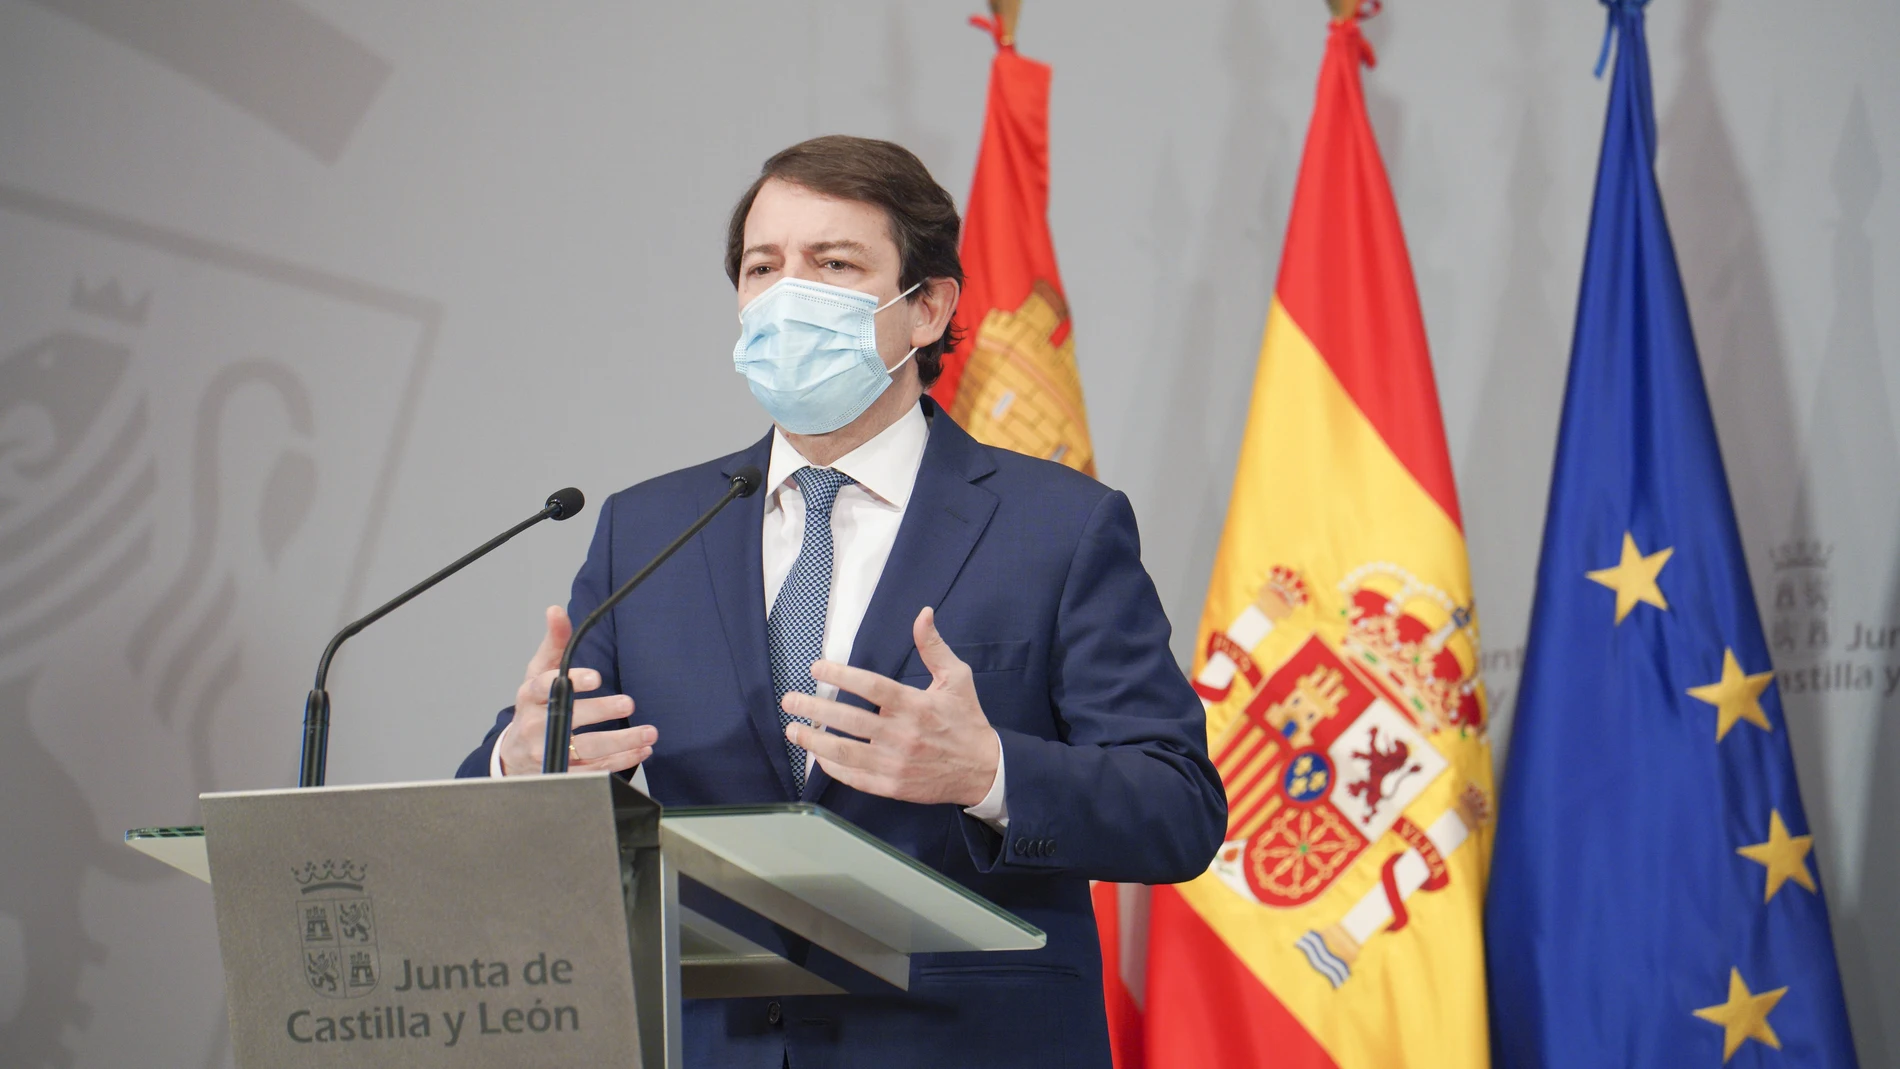 El presidente de la Junta de Castilla y León, Alfonso Fernández Mañueco, durante una rueda de prensa